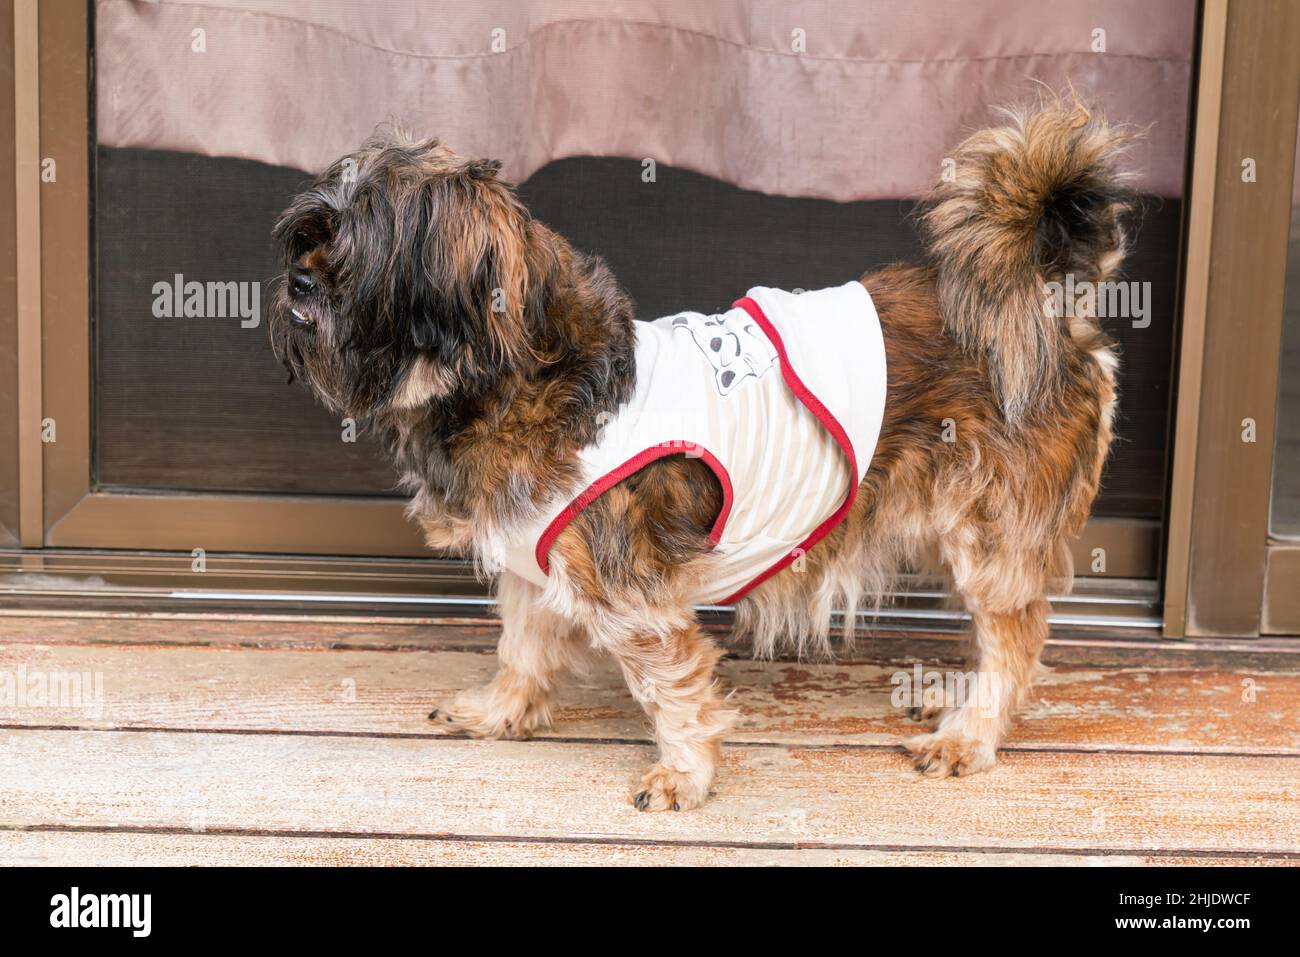 Lindo perro pequeño de raza mixta peludo que se encuentra en el suelo frente a una puerta de cristal en la temporada de invierno. Foto de stock